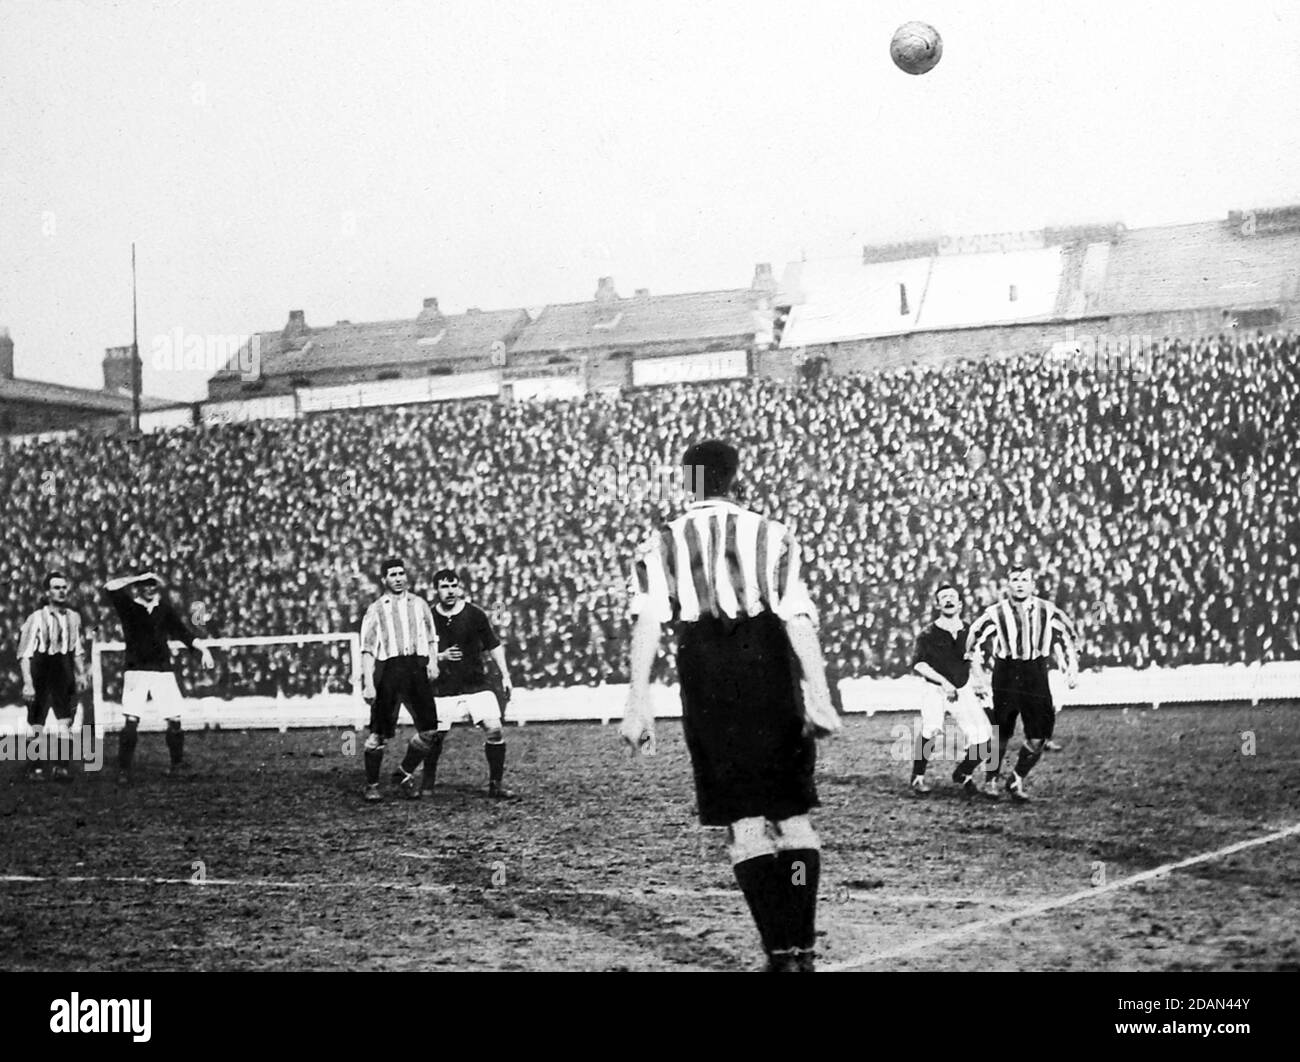 Une foule de matchs de football, début 1900 Banque D'Images